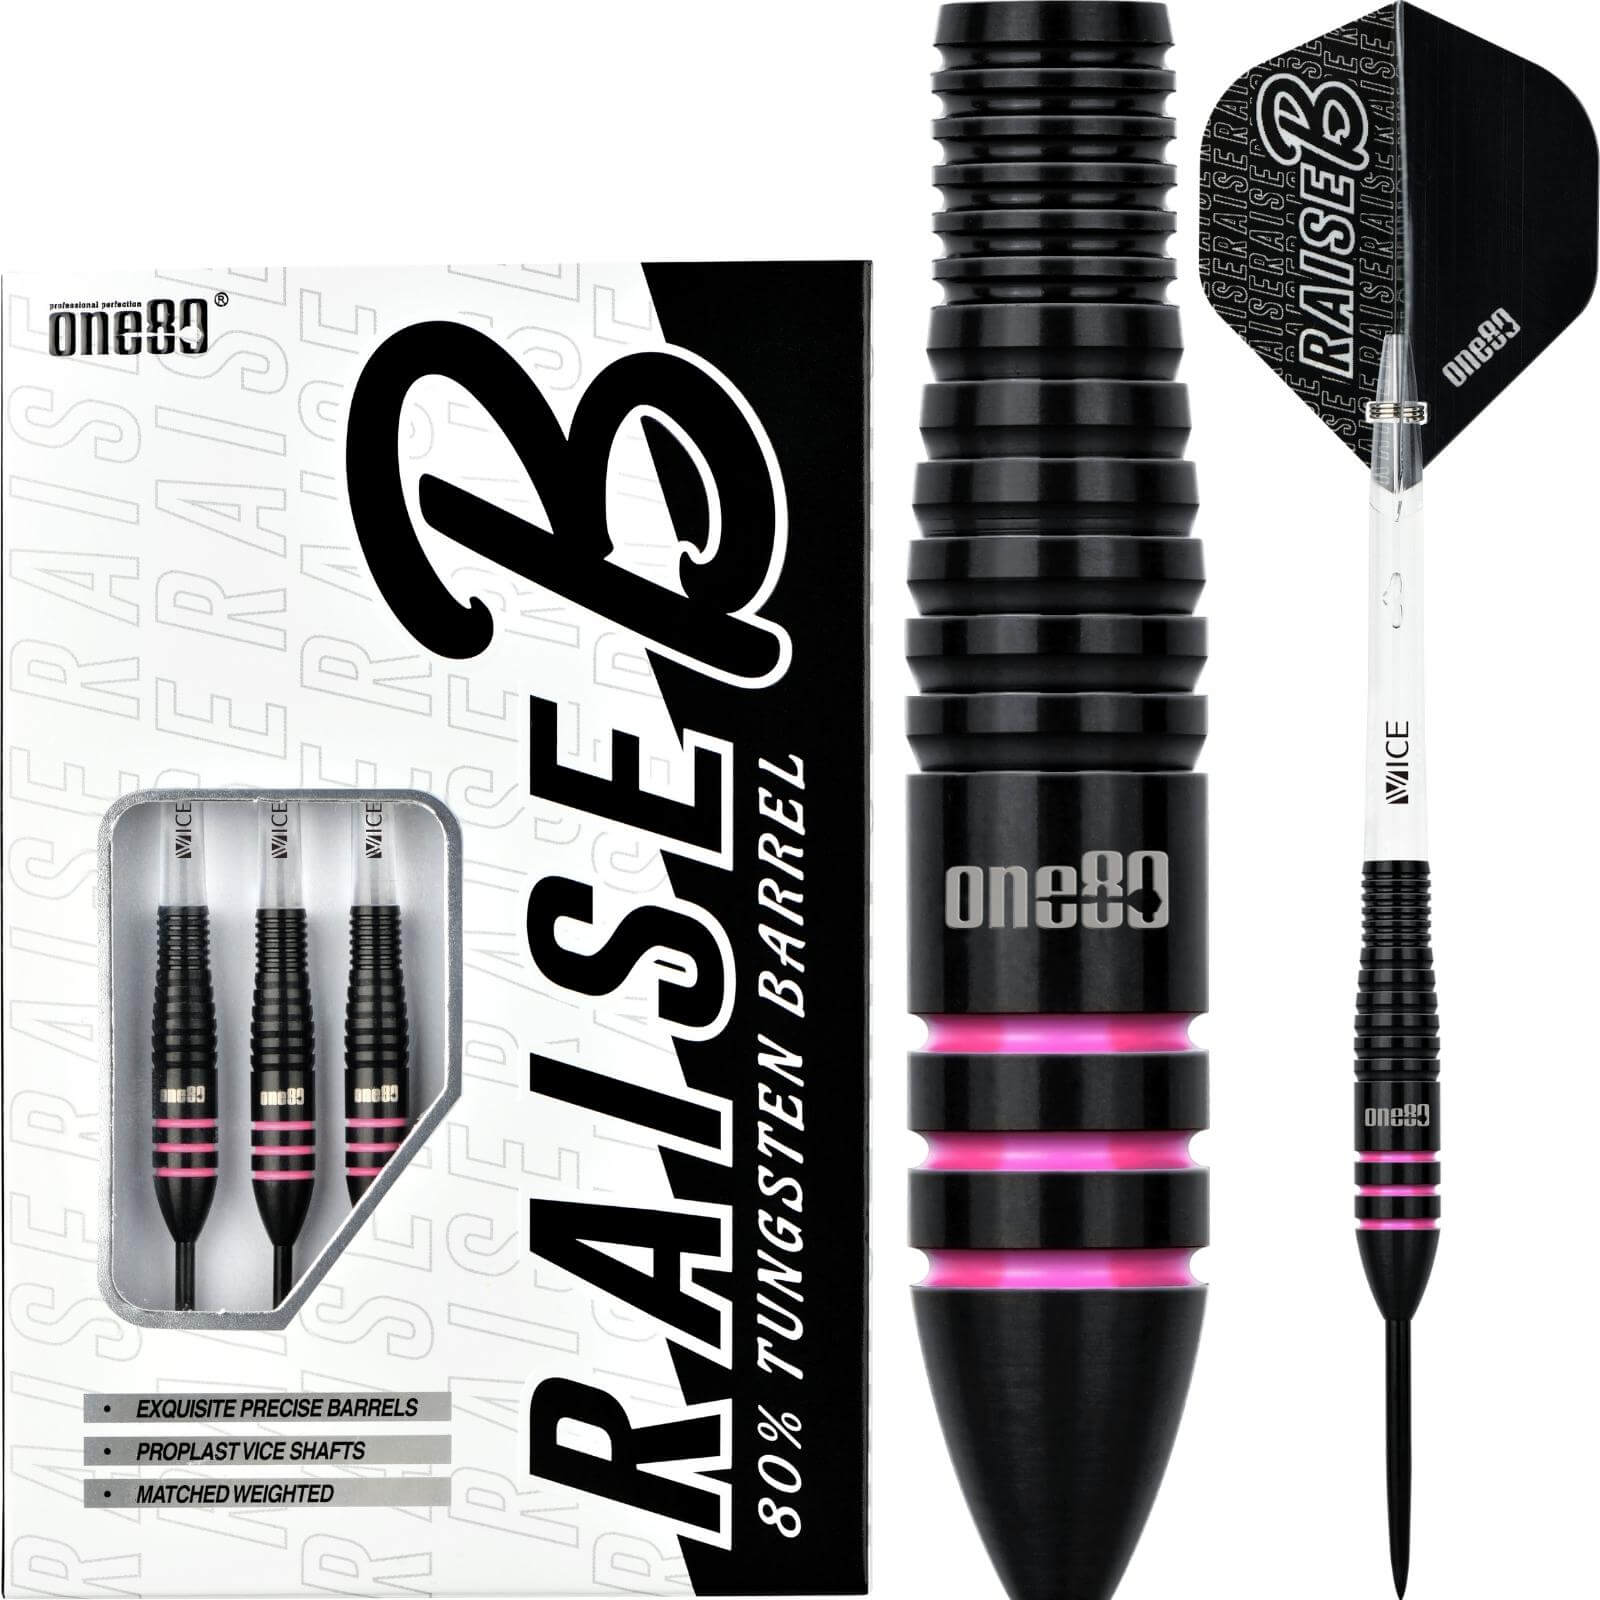 Darts - One80 - Raise B Darts - Pink - Steel Tip - 80% Tungsten - 21g 23g 